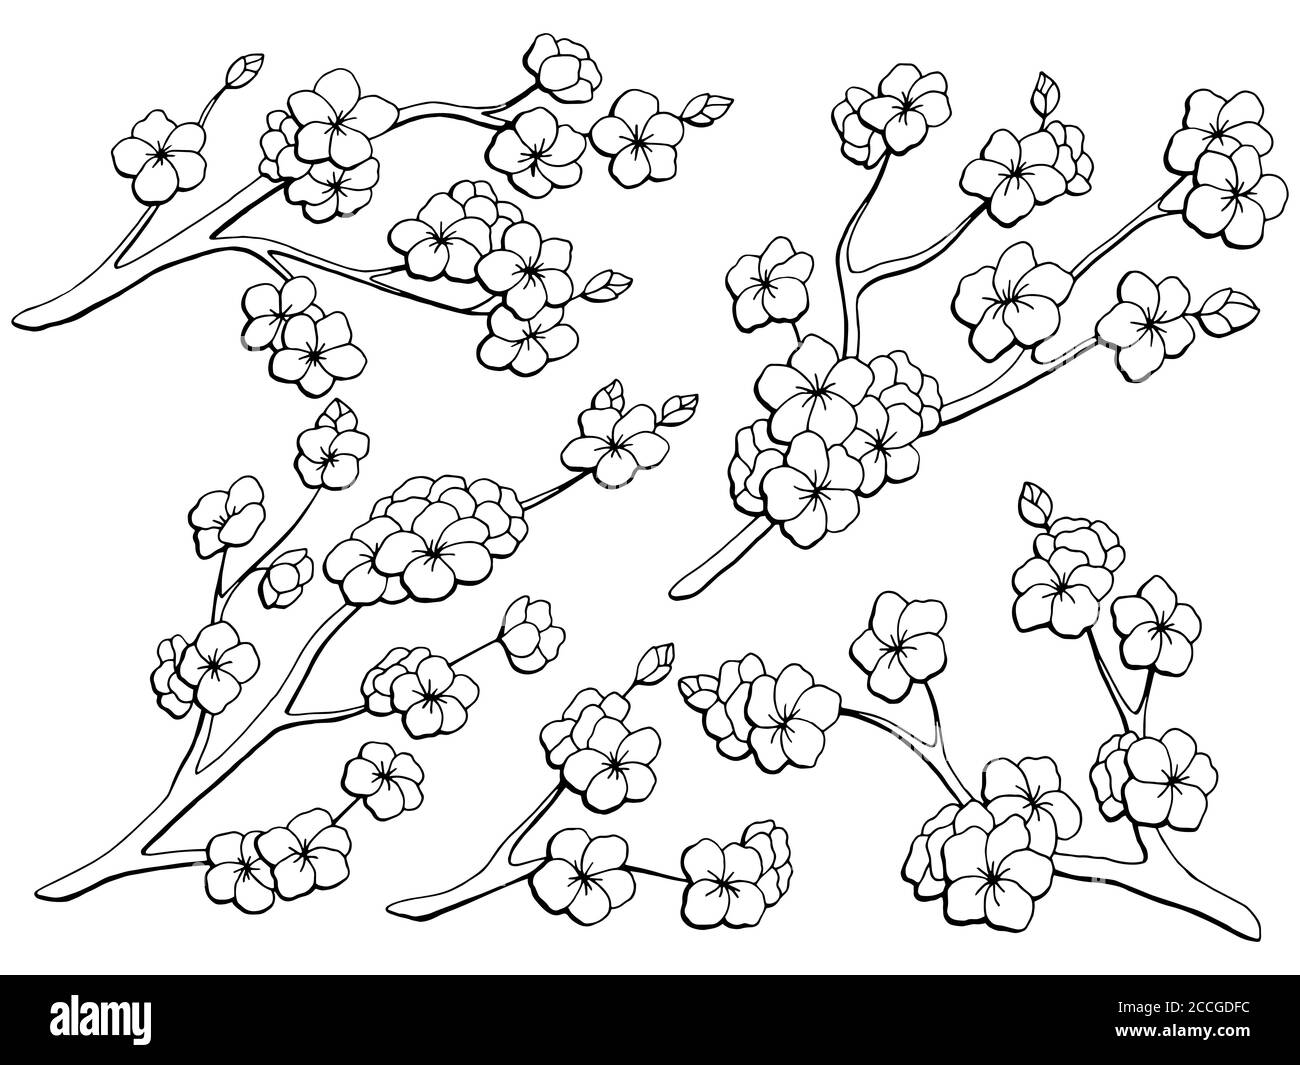 Sakura graphic flower branch black white isolated sketch set illustration vector Stock Vector